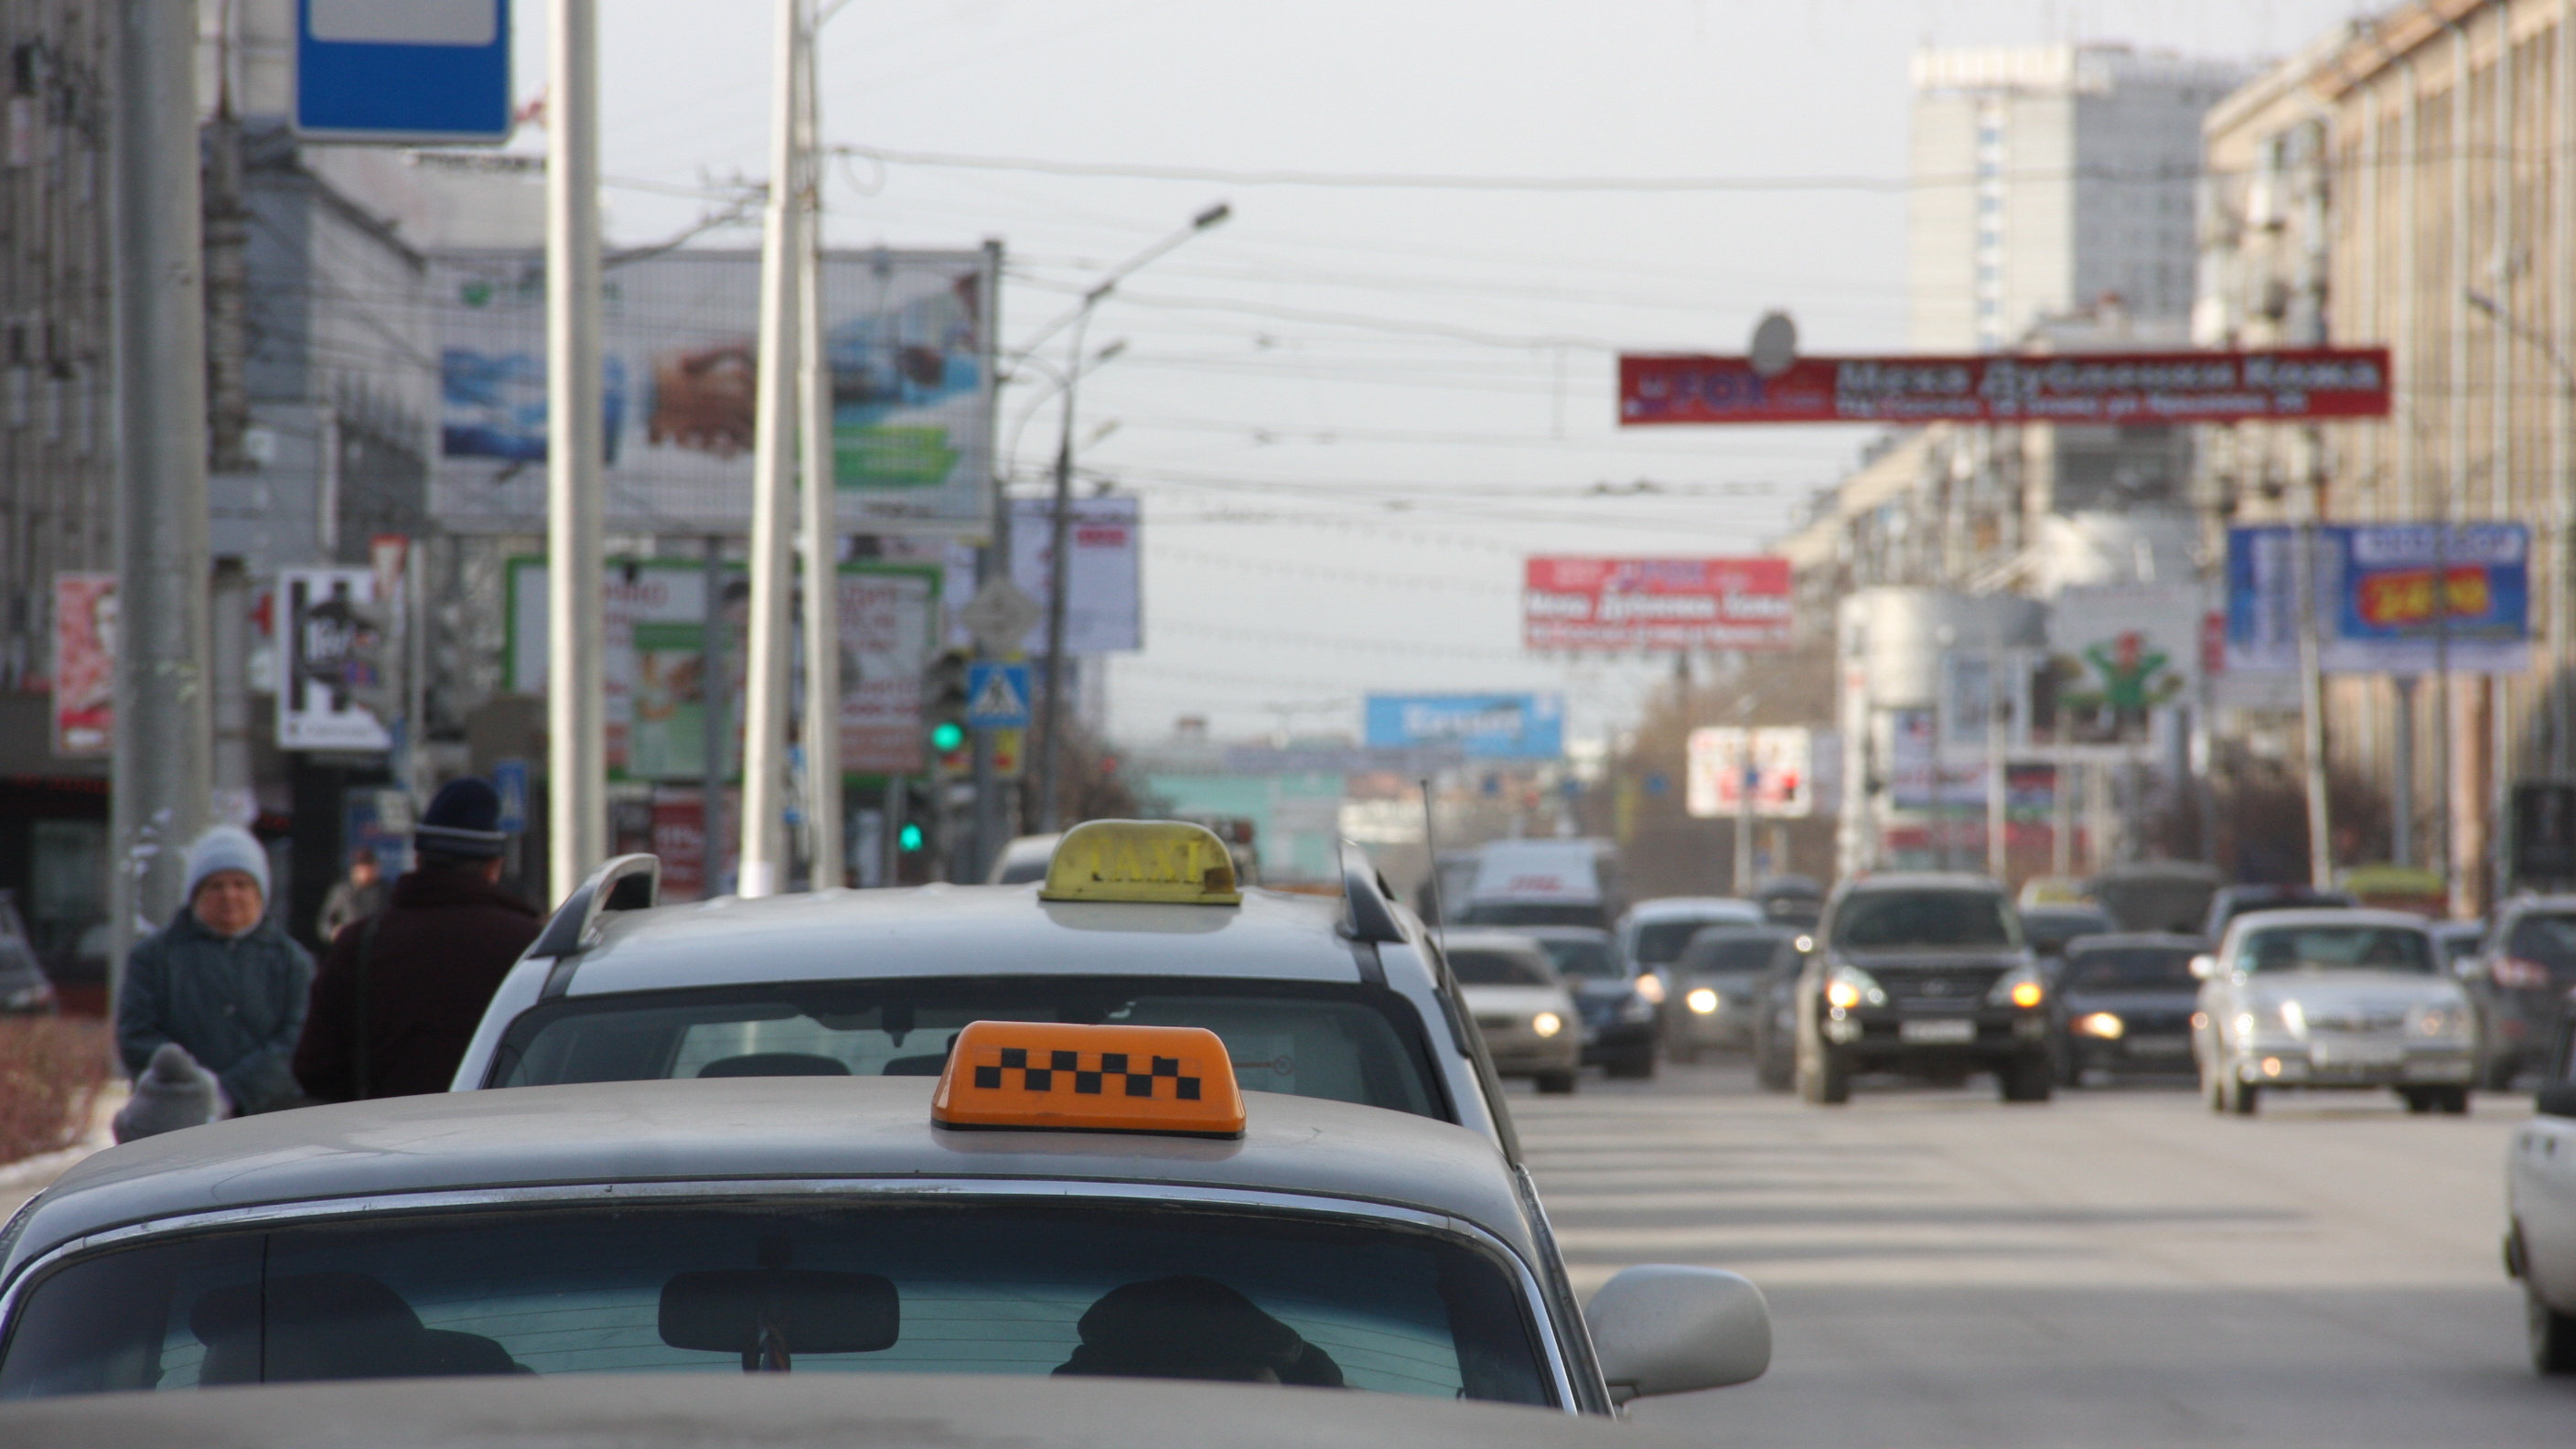 «Цены офигевшие»: стоимость такси резко выросла в Новосибирске утром в понедельник